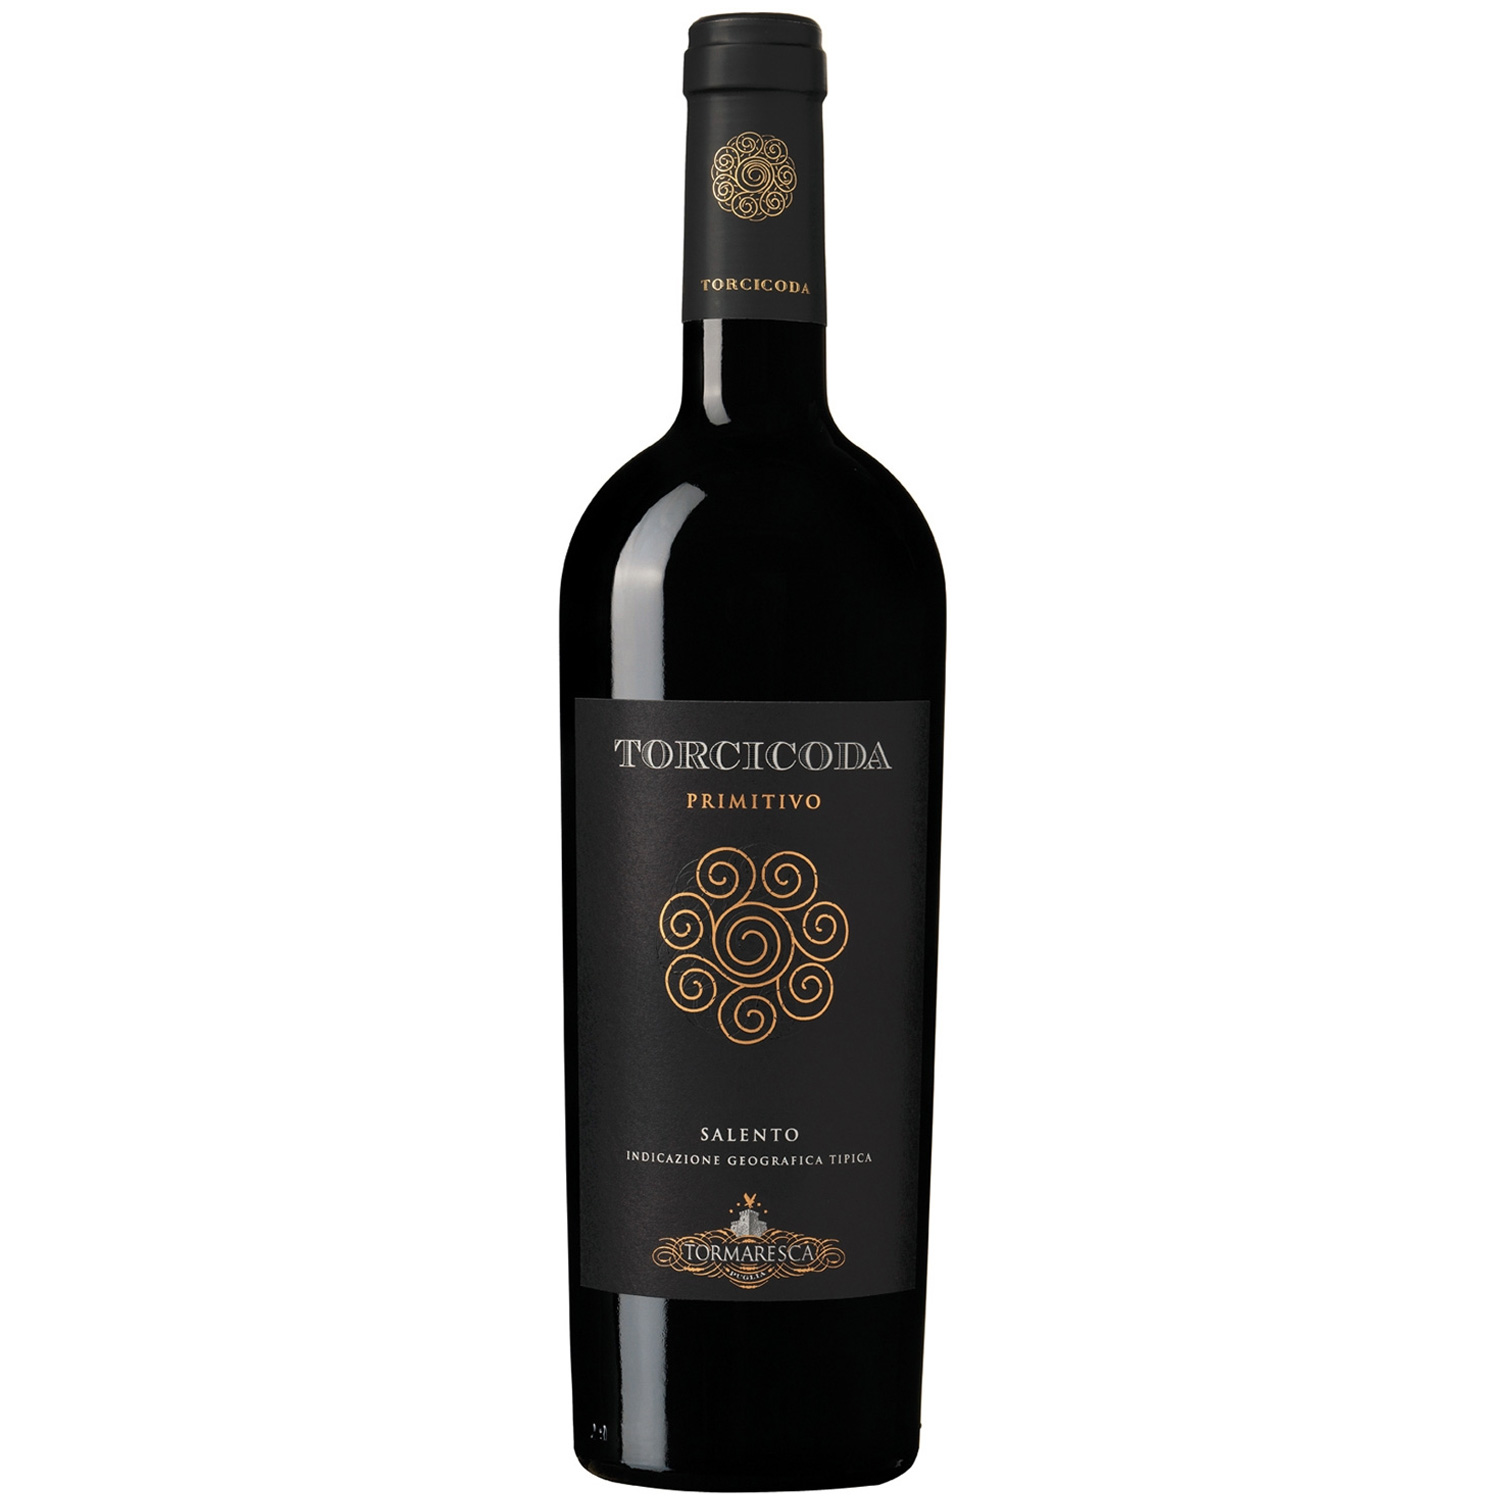 Italienischer Rotwein Torcicoda Primitivo 2018